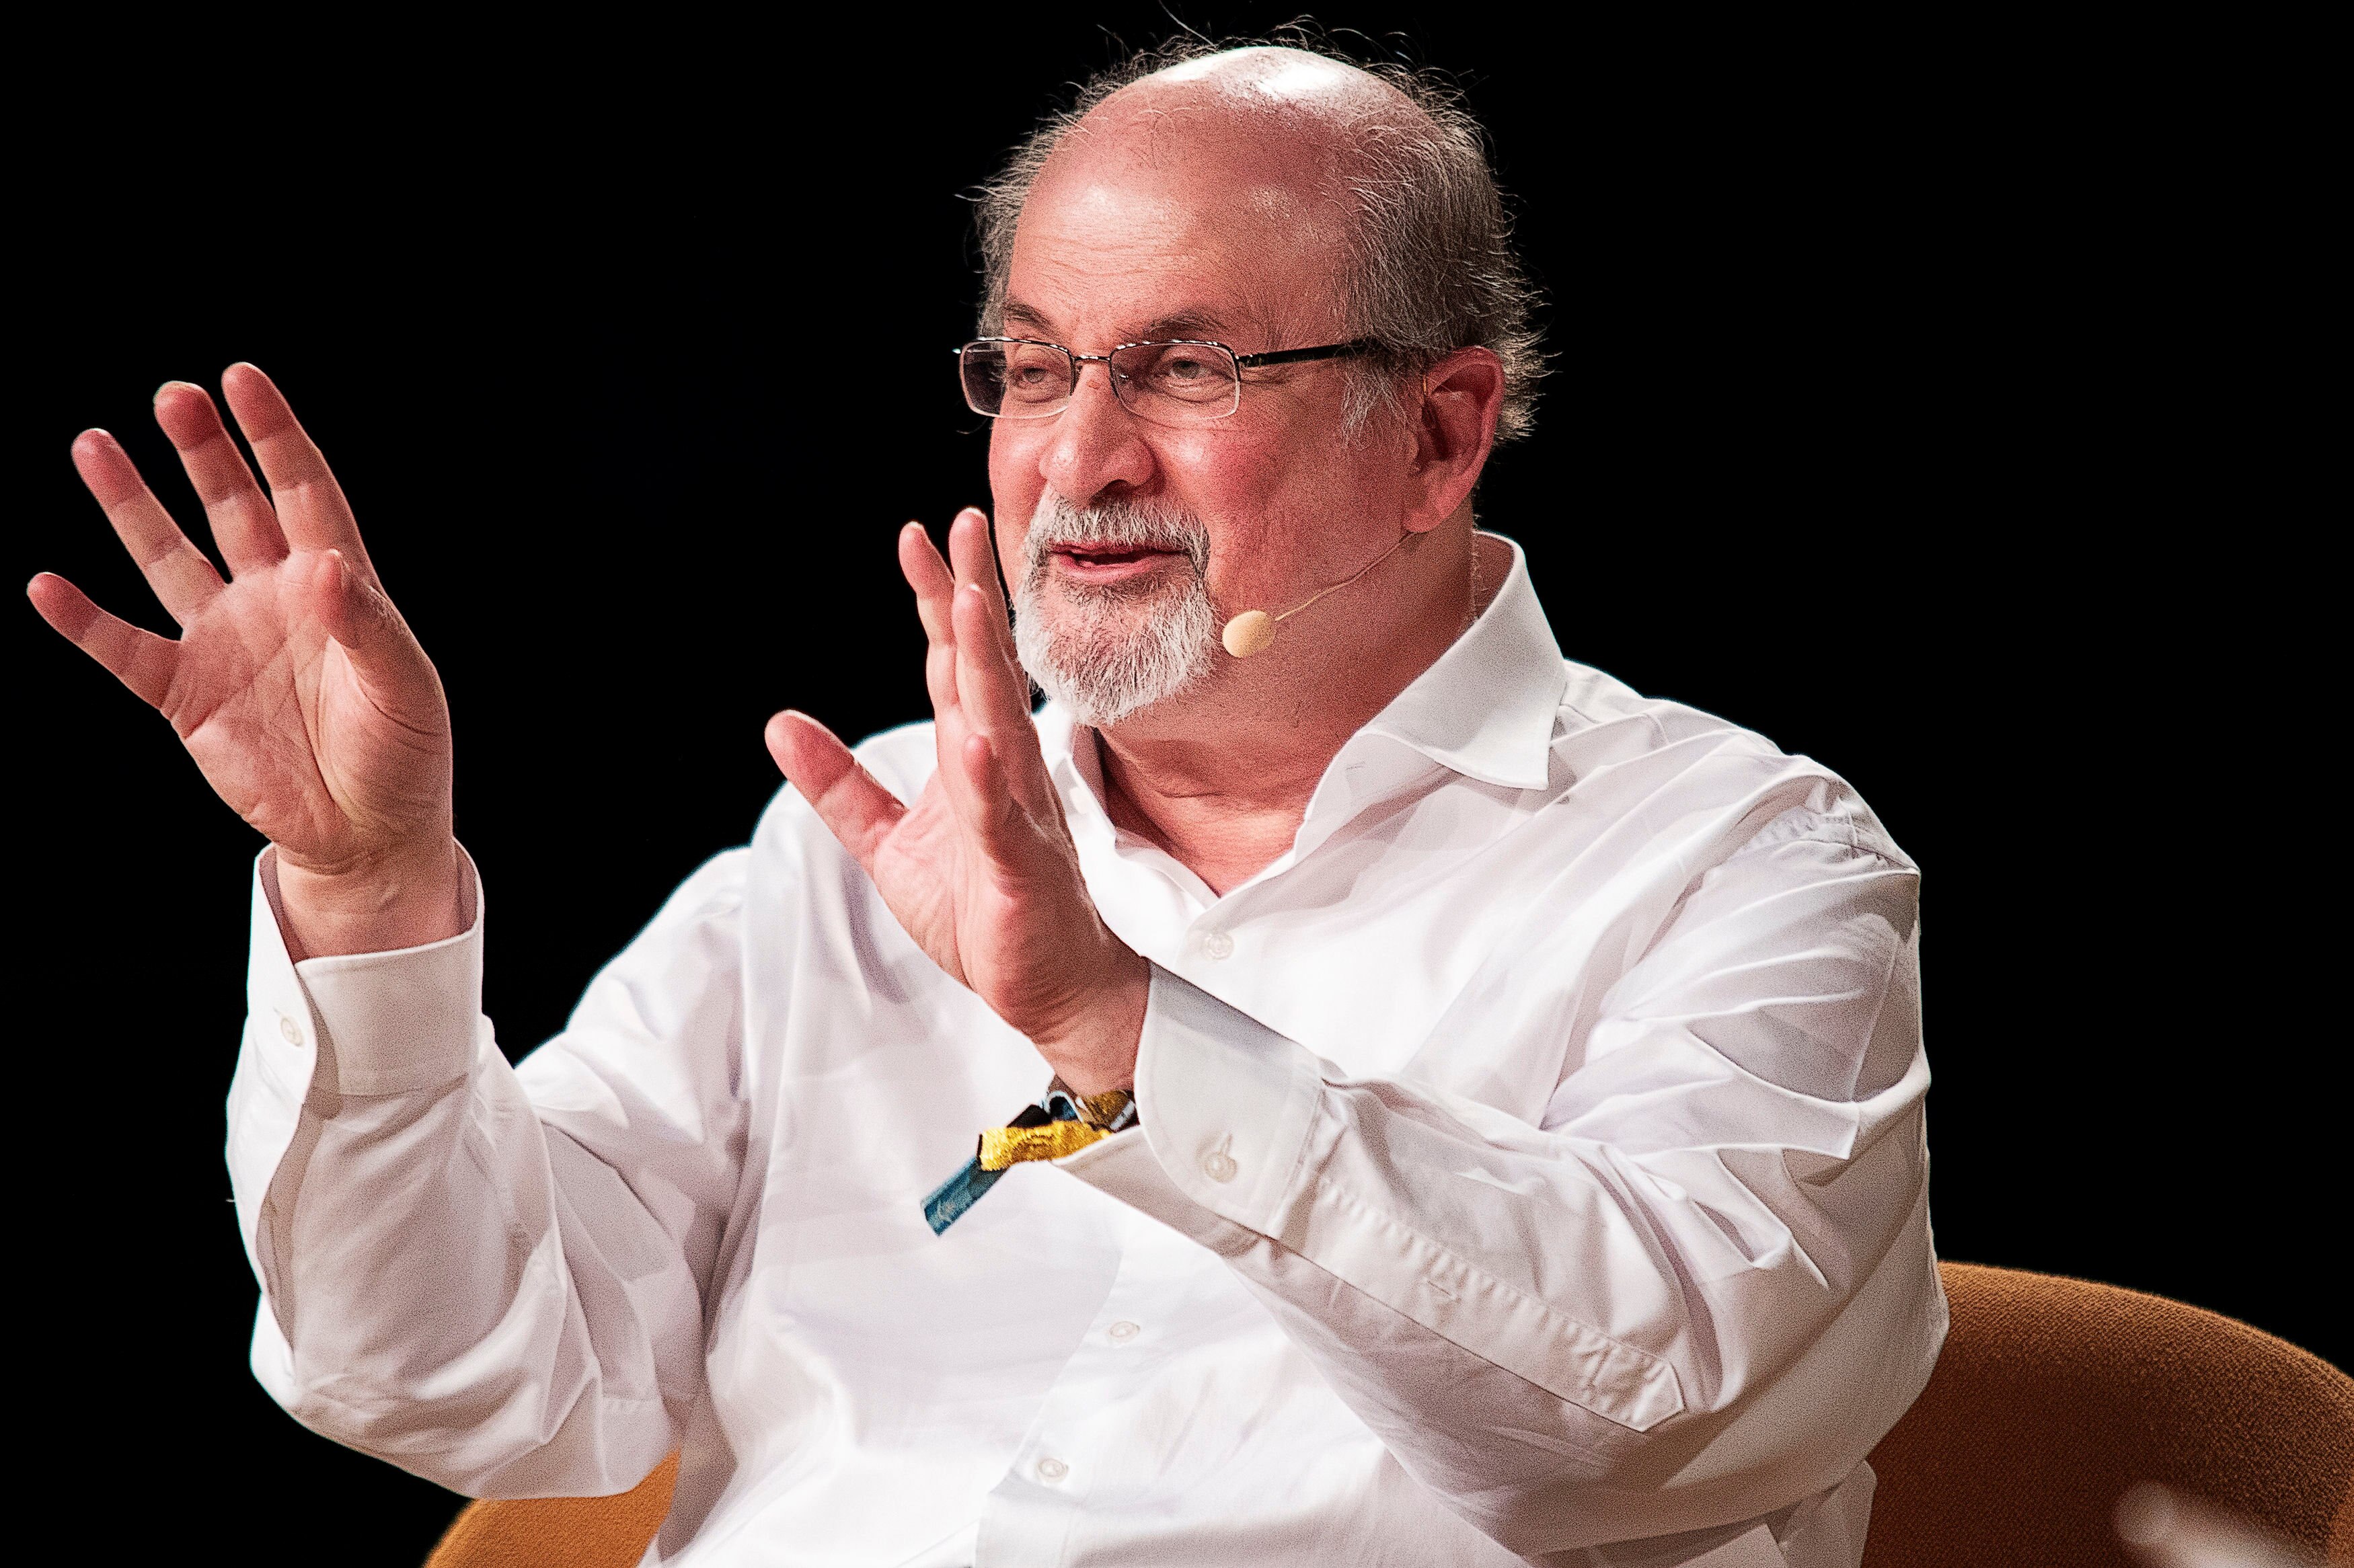 Personalidades literárias se solidarizam com Rushdie em evento em Nova York  - Folha PE